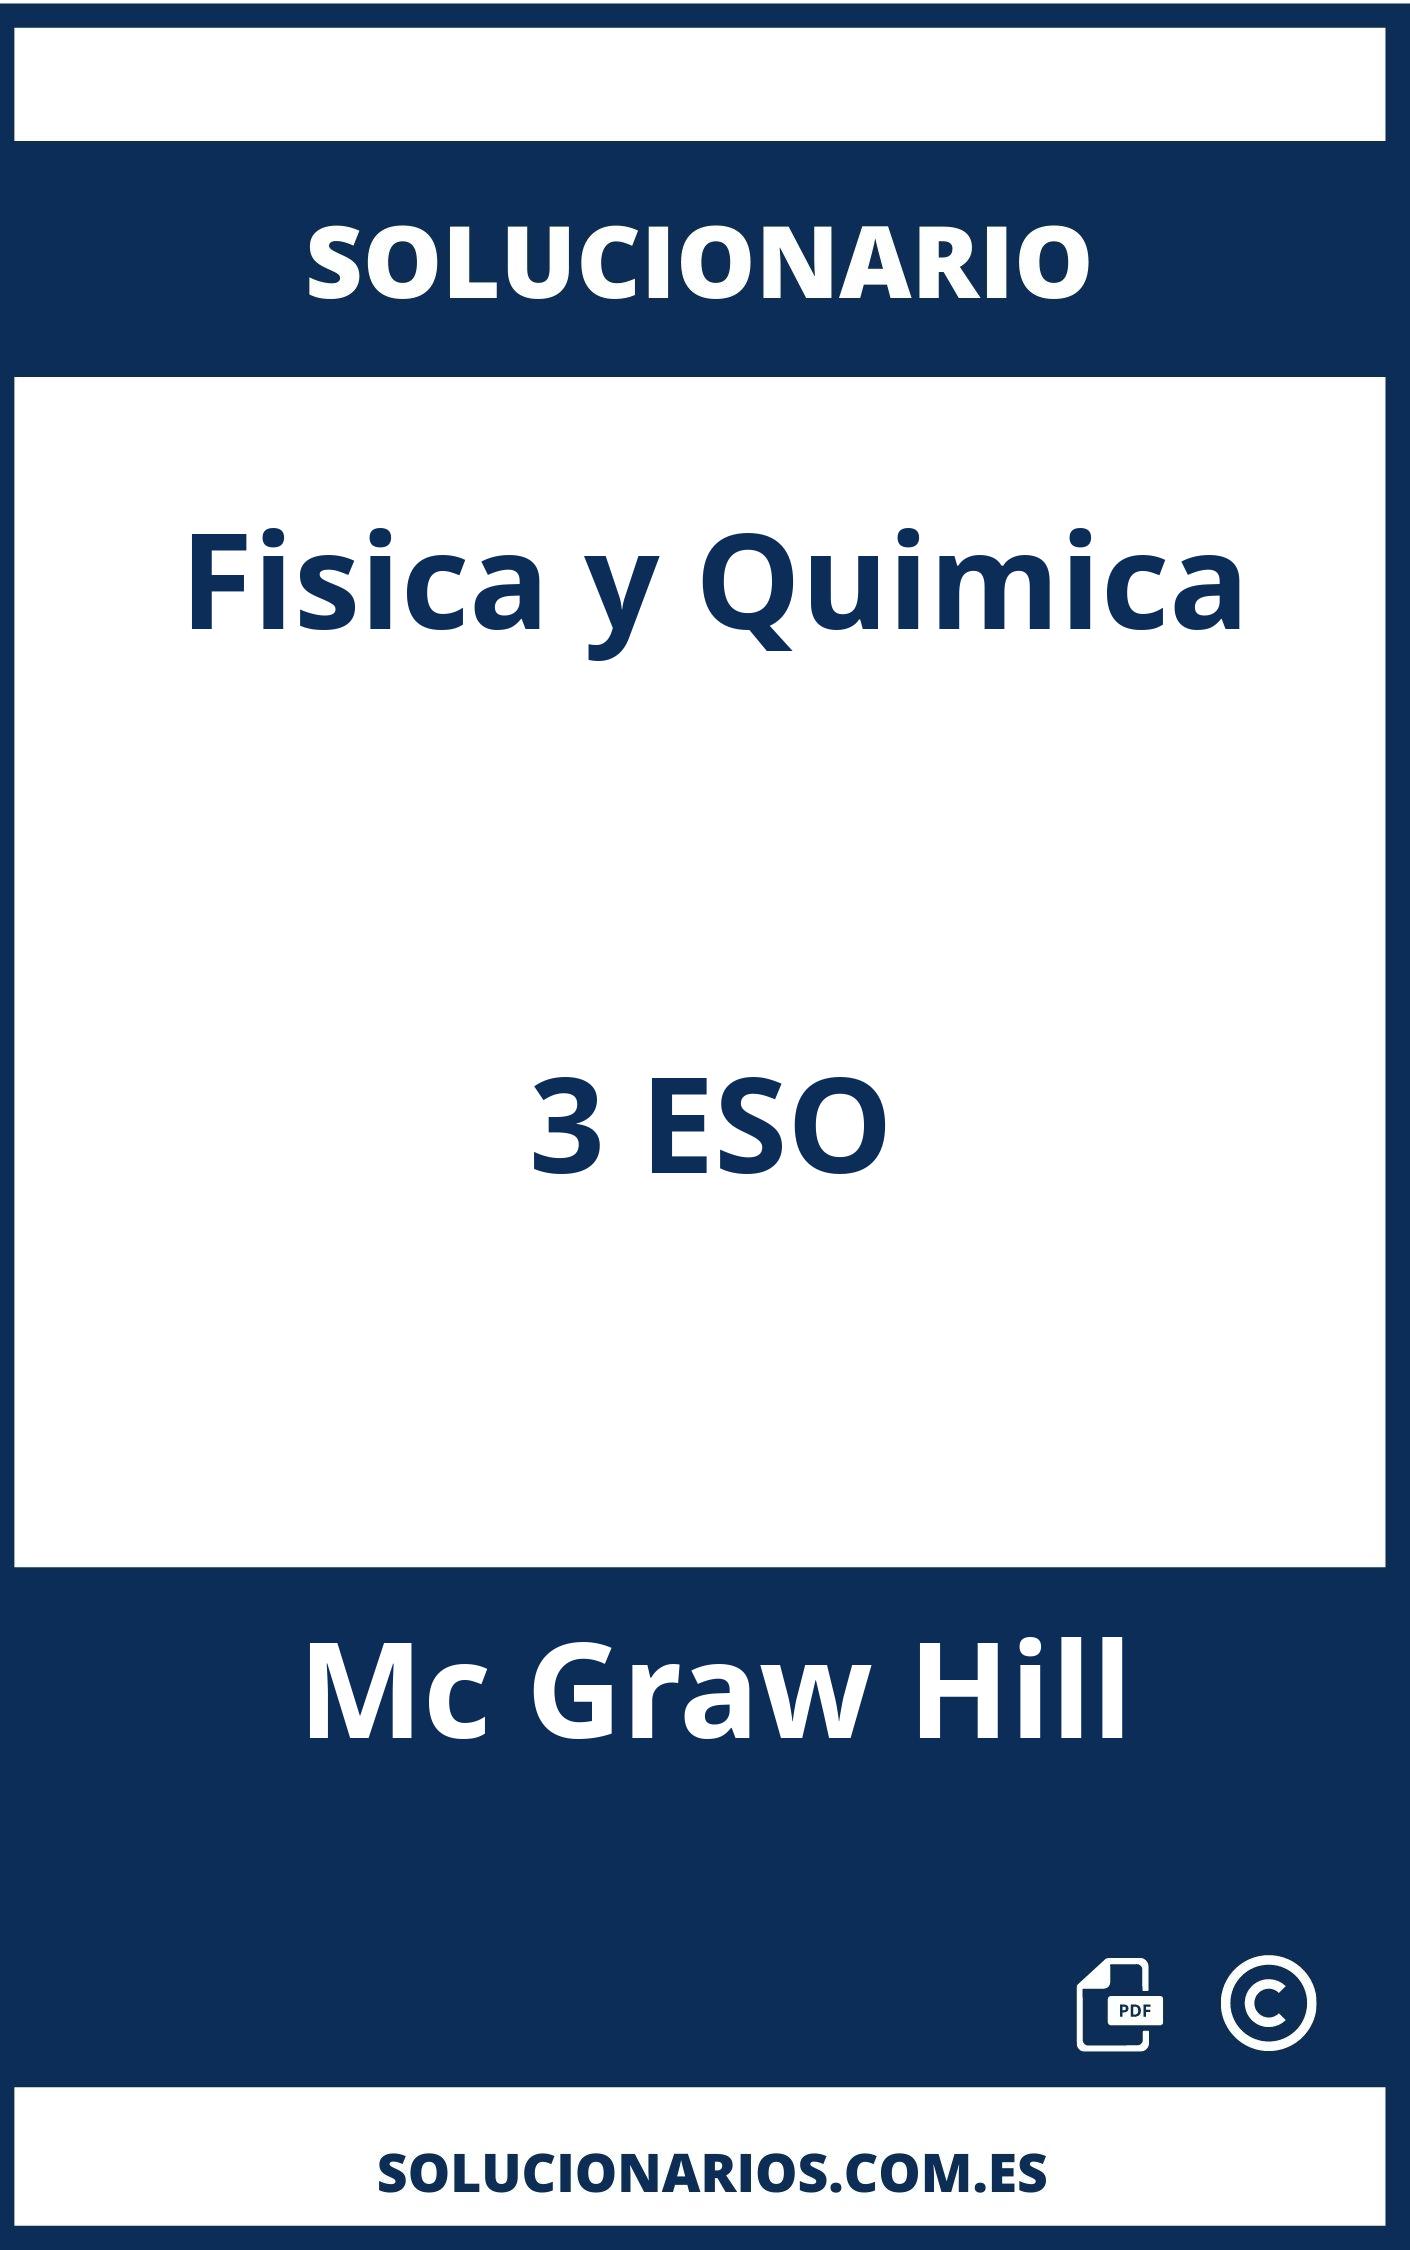 Solucionario Fisica y Quimica 3 ESO Mc Graw Hill